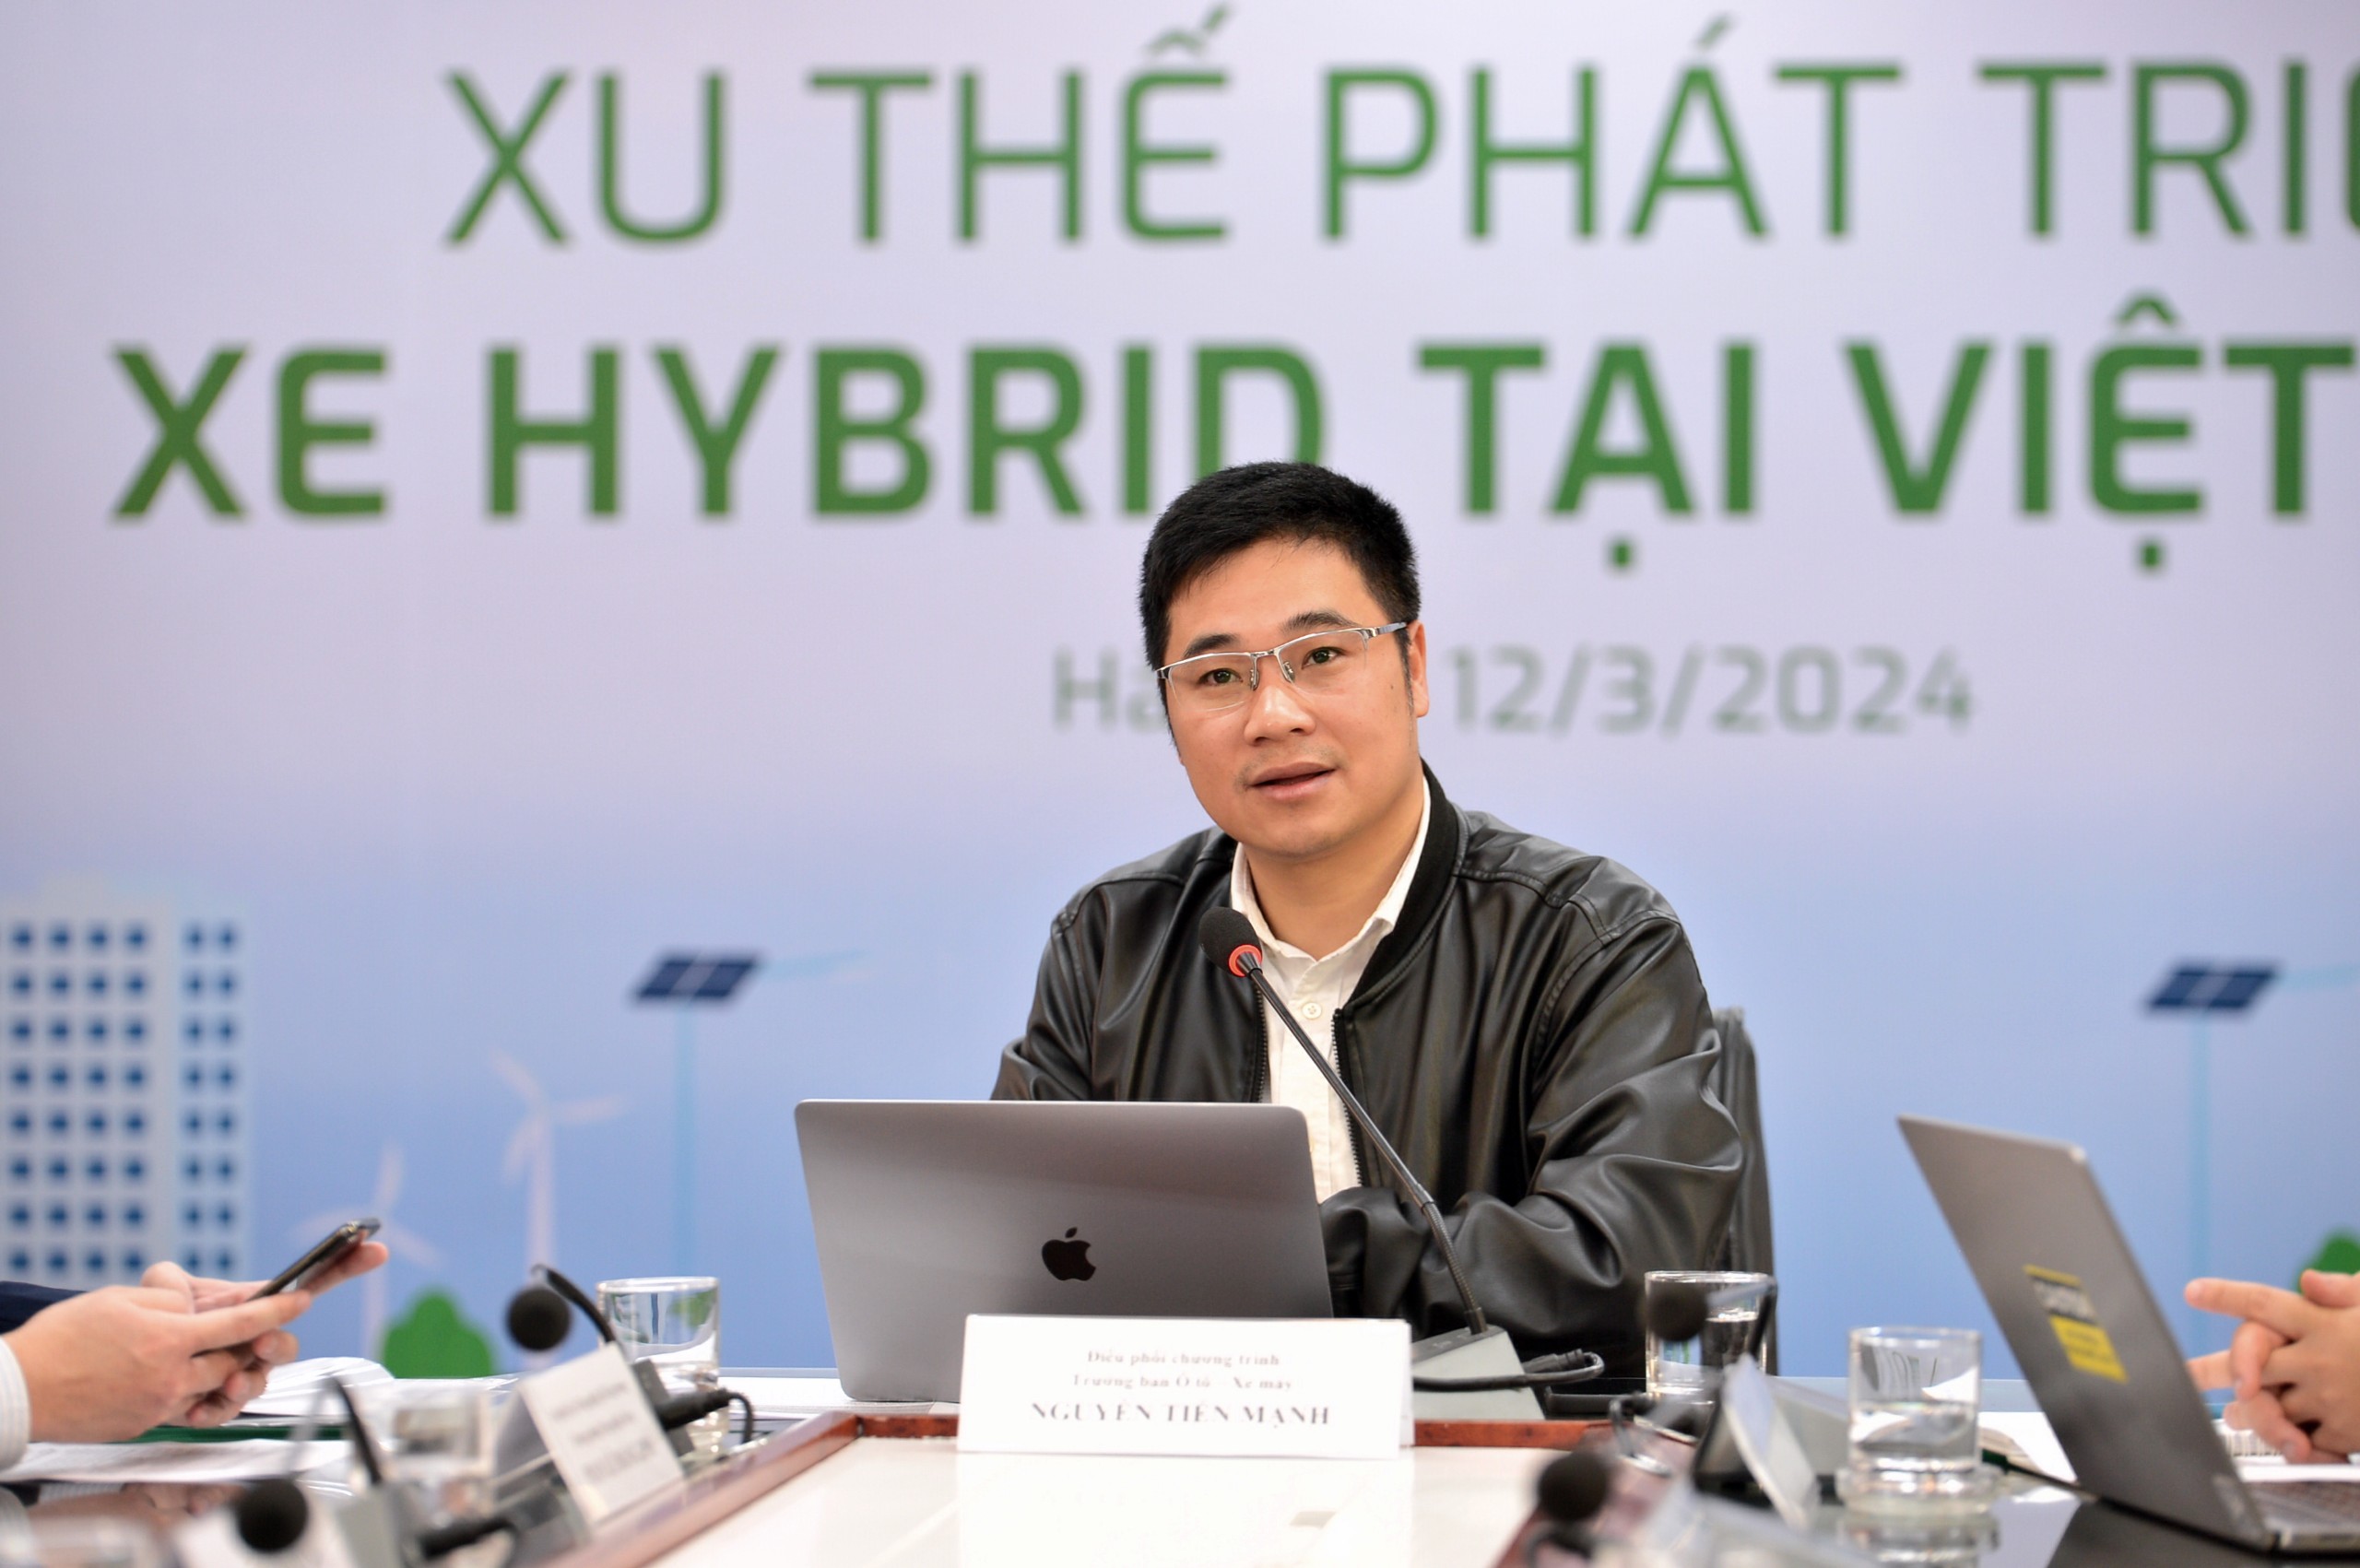 Tọa đàm: Xu thế phát triển xe hybrid tại Việt Nam- Ảnh 10.